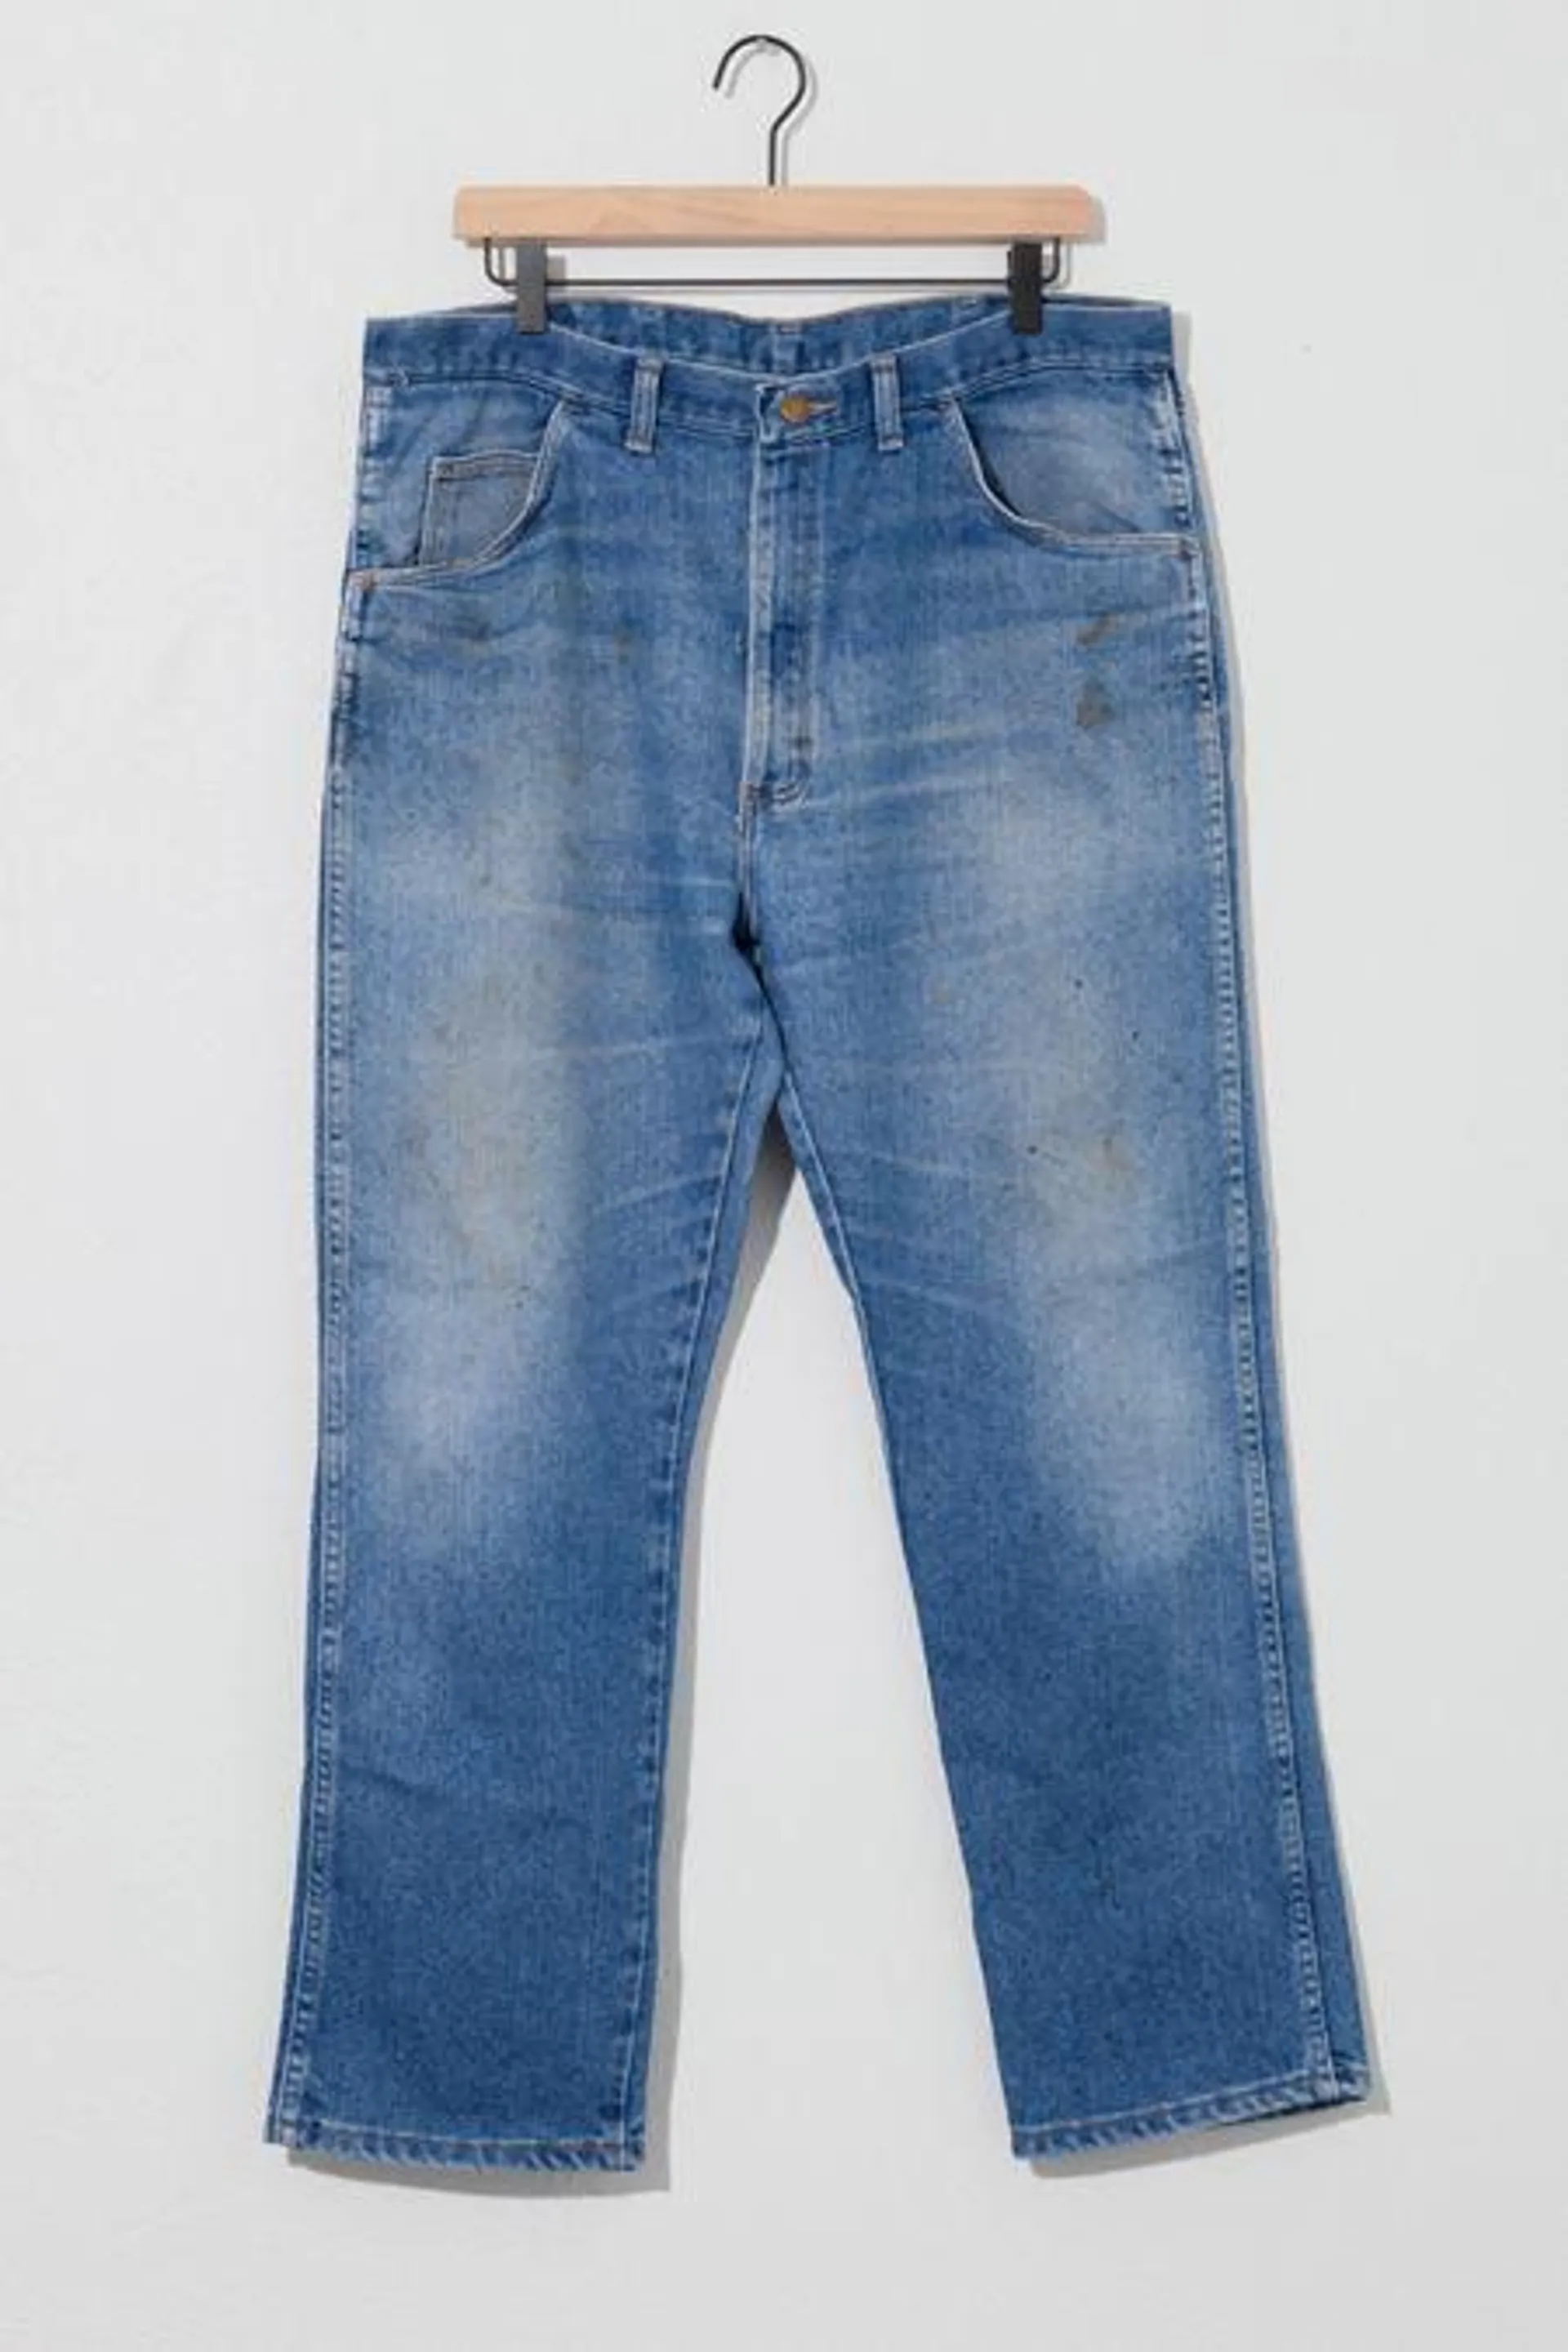 Vintage 1990s Distressed Wrangler Denim Jeans